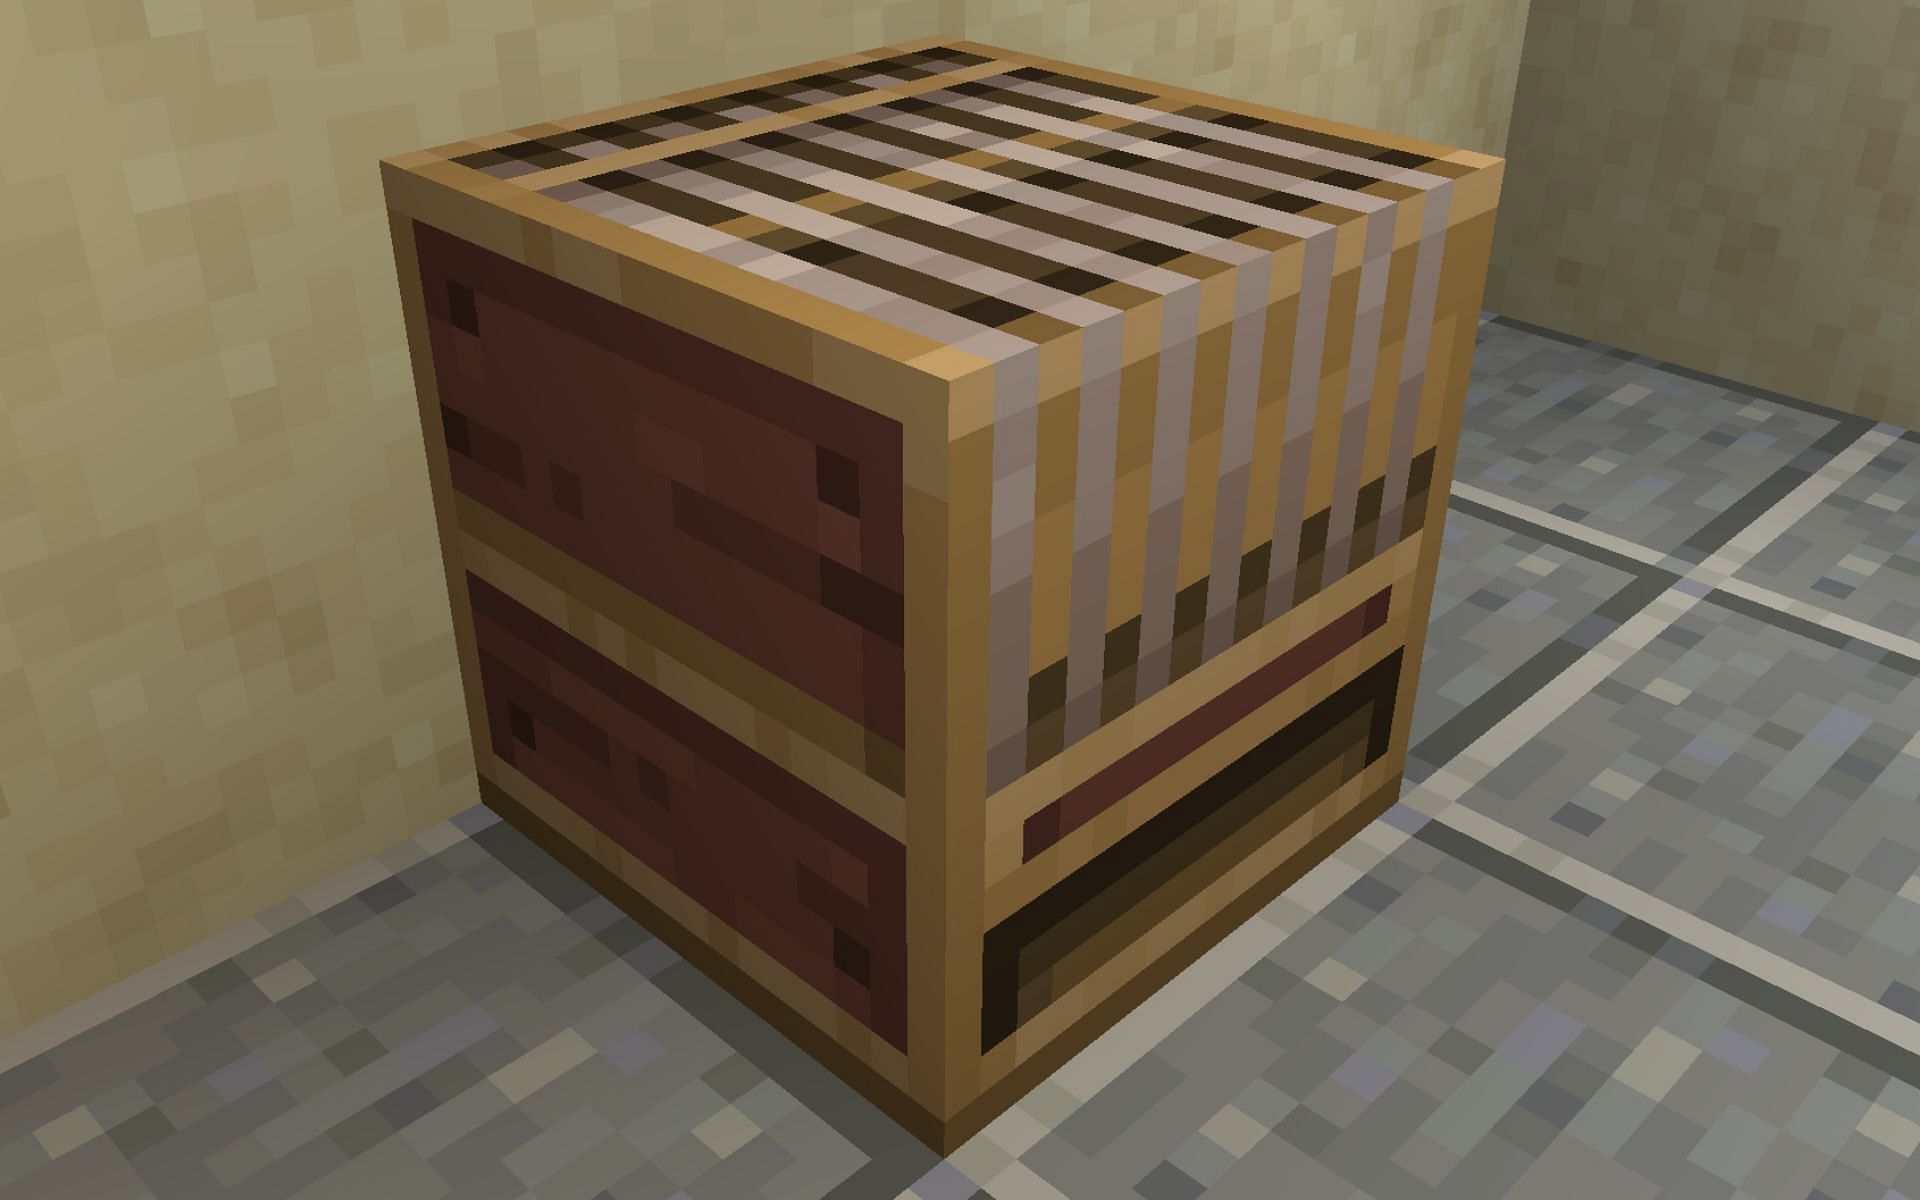 A loom block (Image via Minecraft)